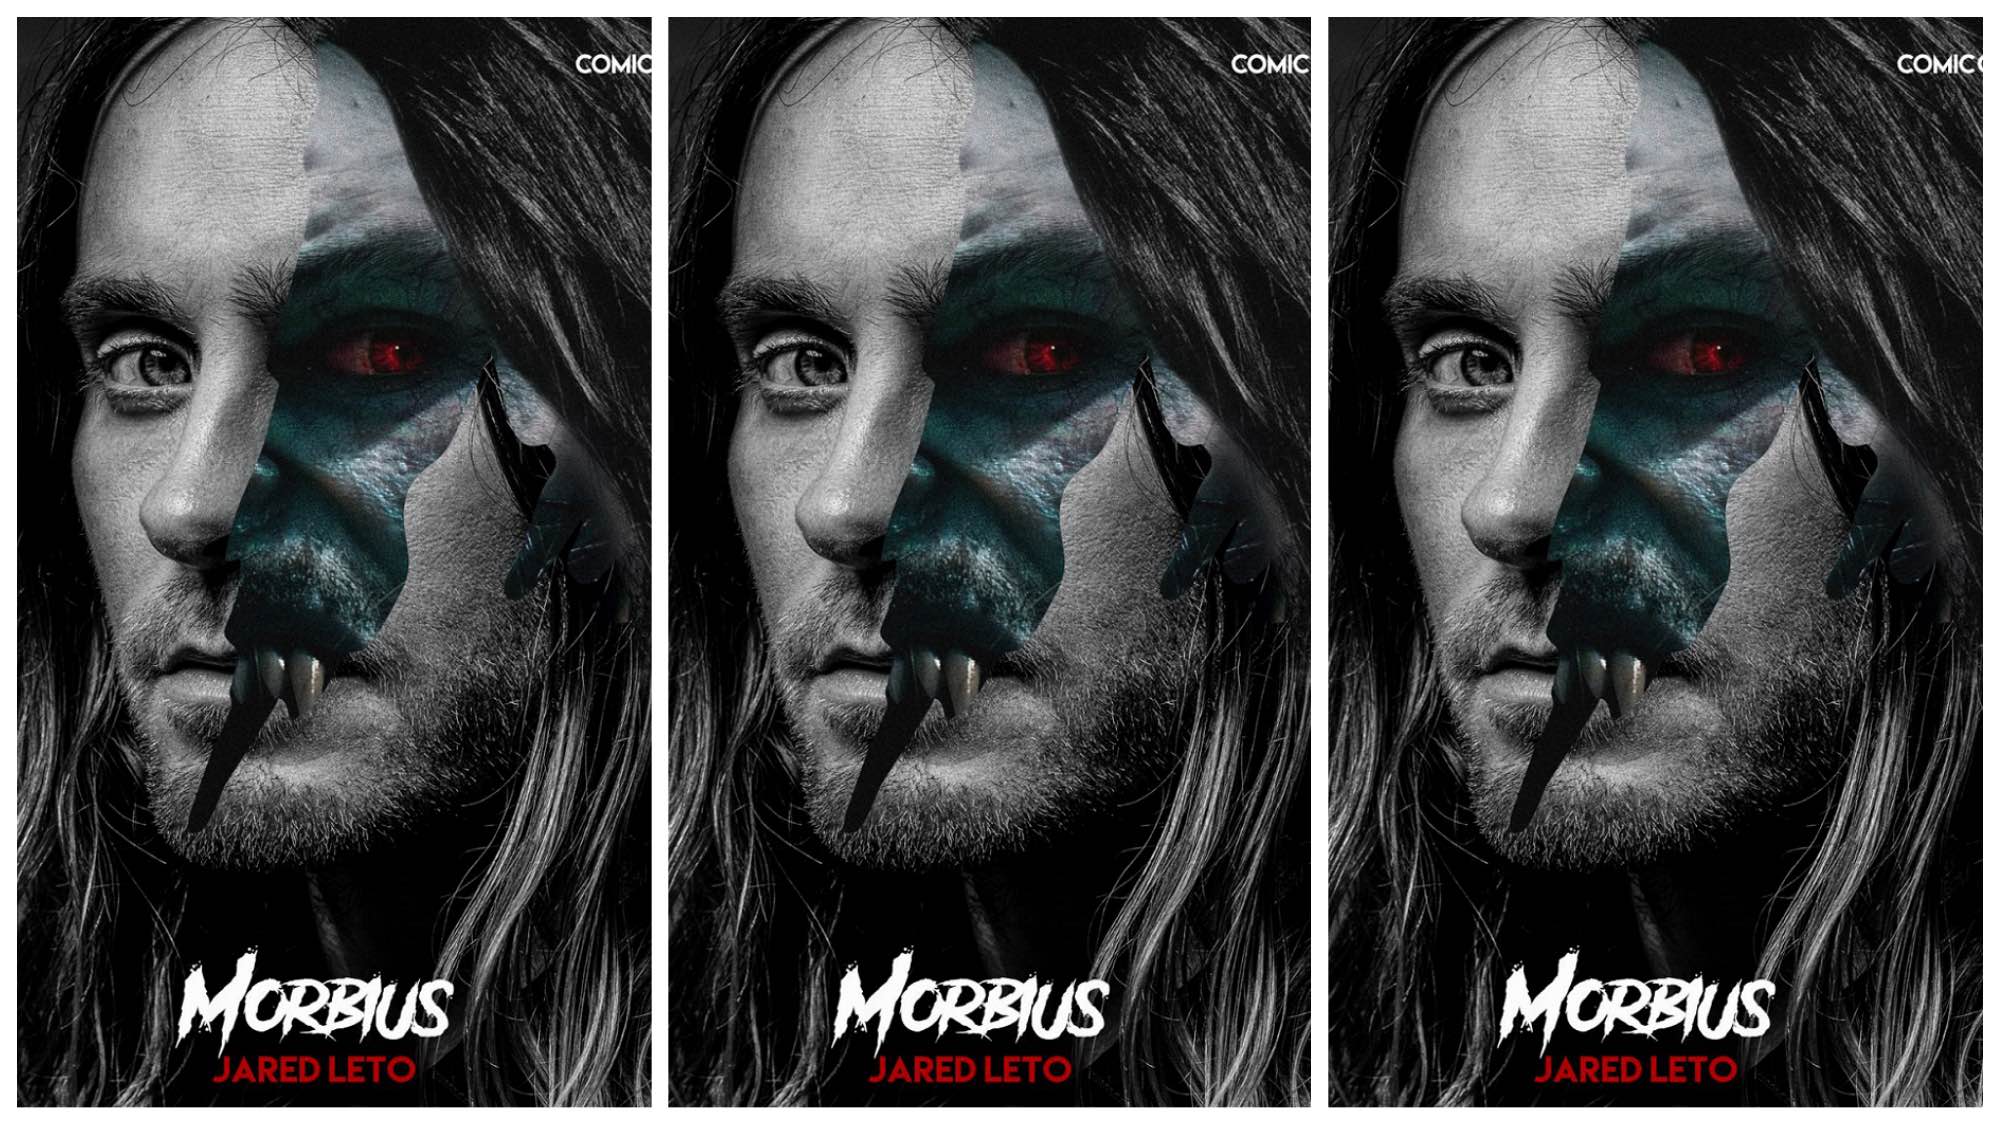 漫威巨制《莫比亚斯》发布特别海报 暗黑英雄血瞳獠牙摄人心魄